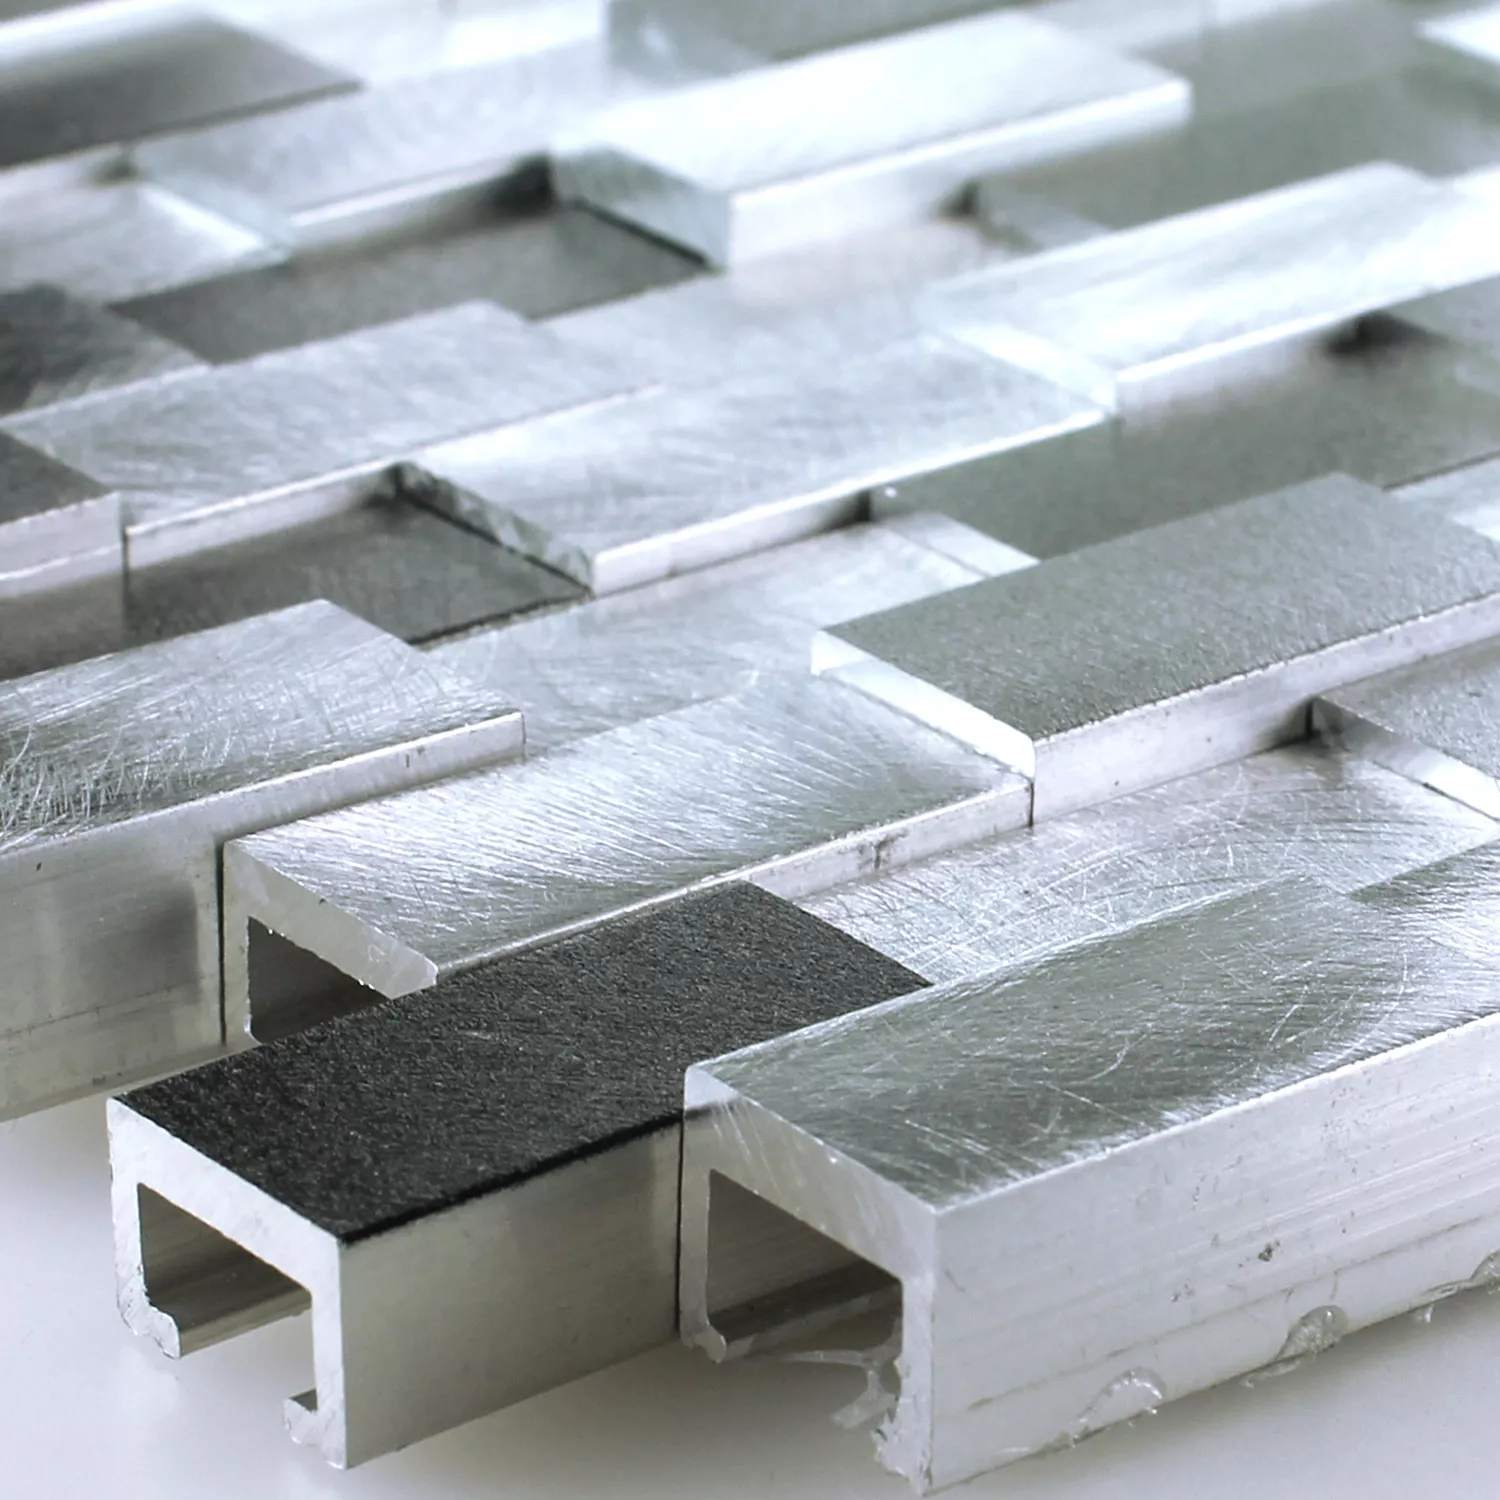 Mosaikfliesen Aluminium Metall Langley 3D Schwarz Grau